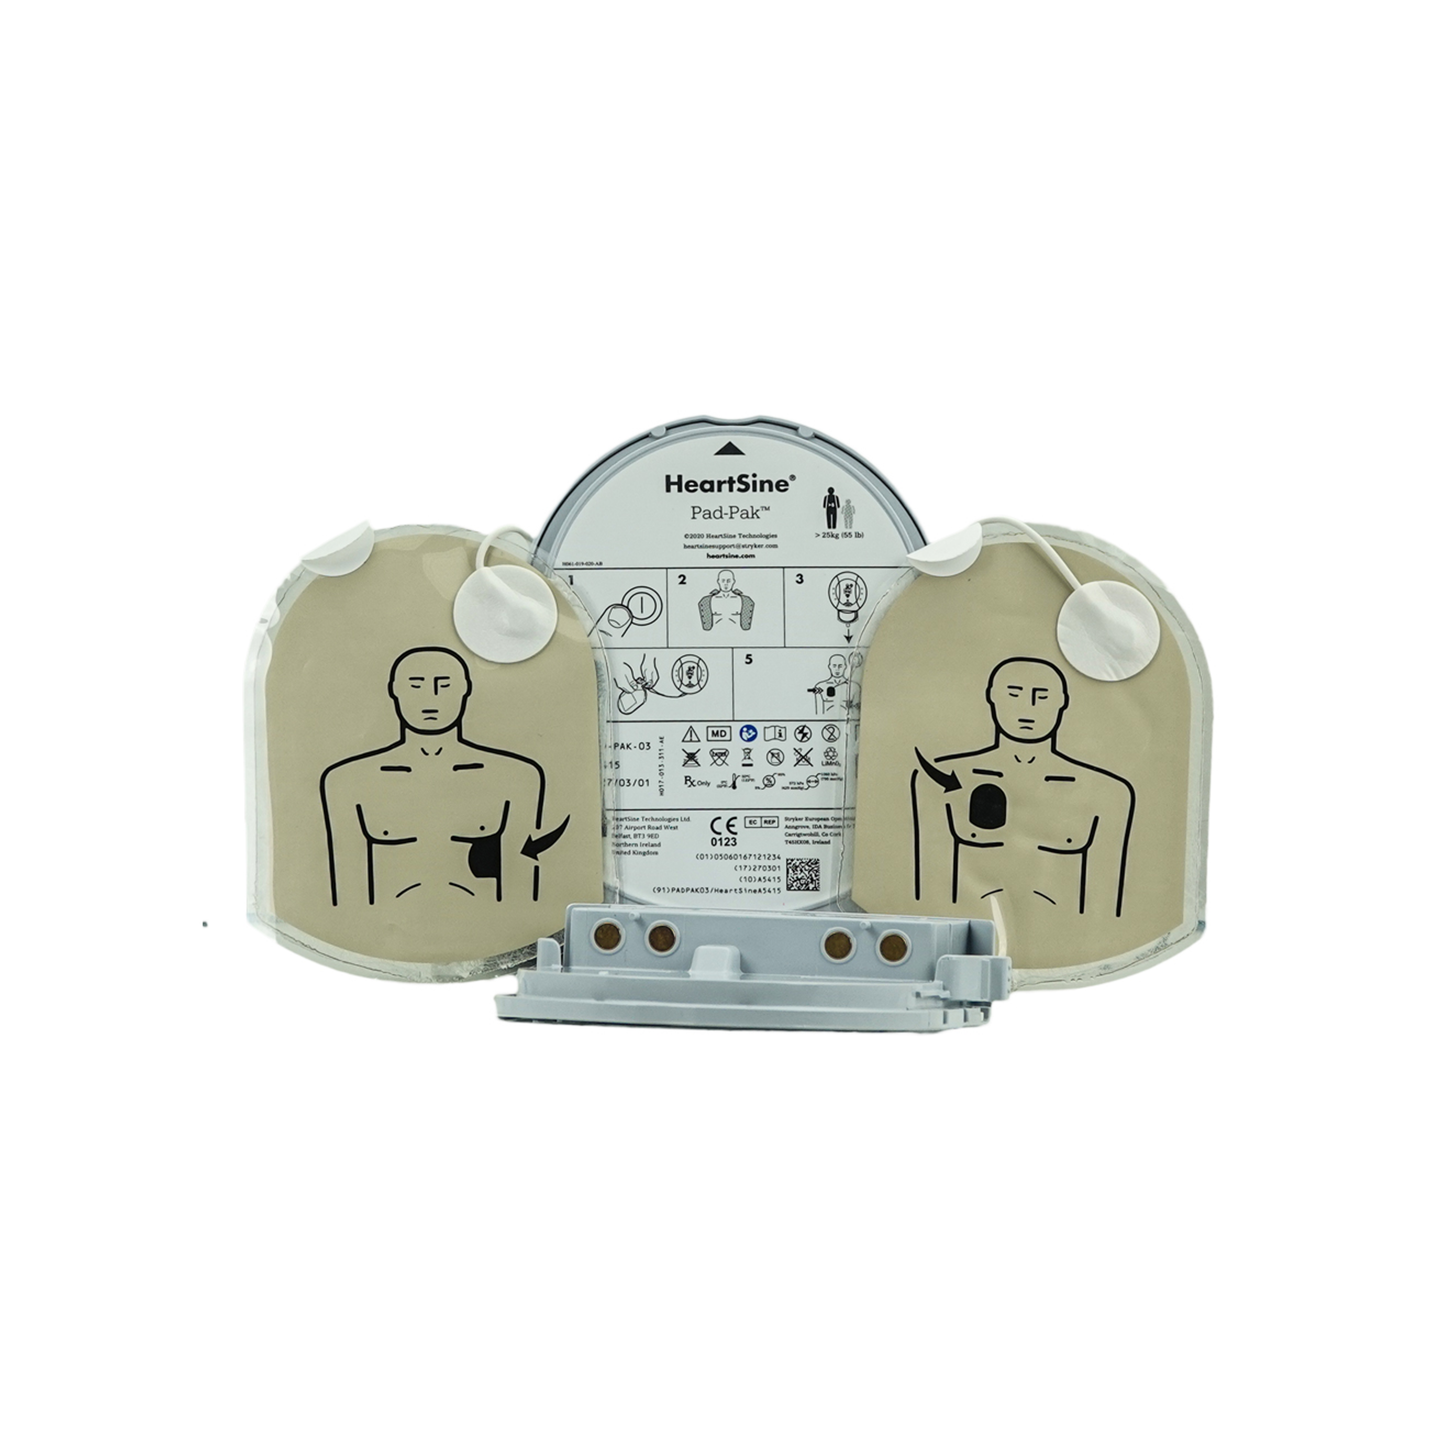 HeartSine Batterie- und Elektrodenkassette, PAD-PAK 03 für Erwachsene und Kinder > 8 Jahre